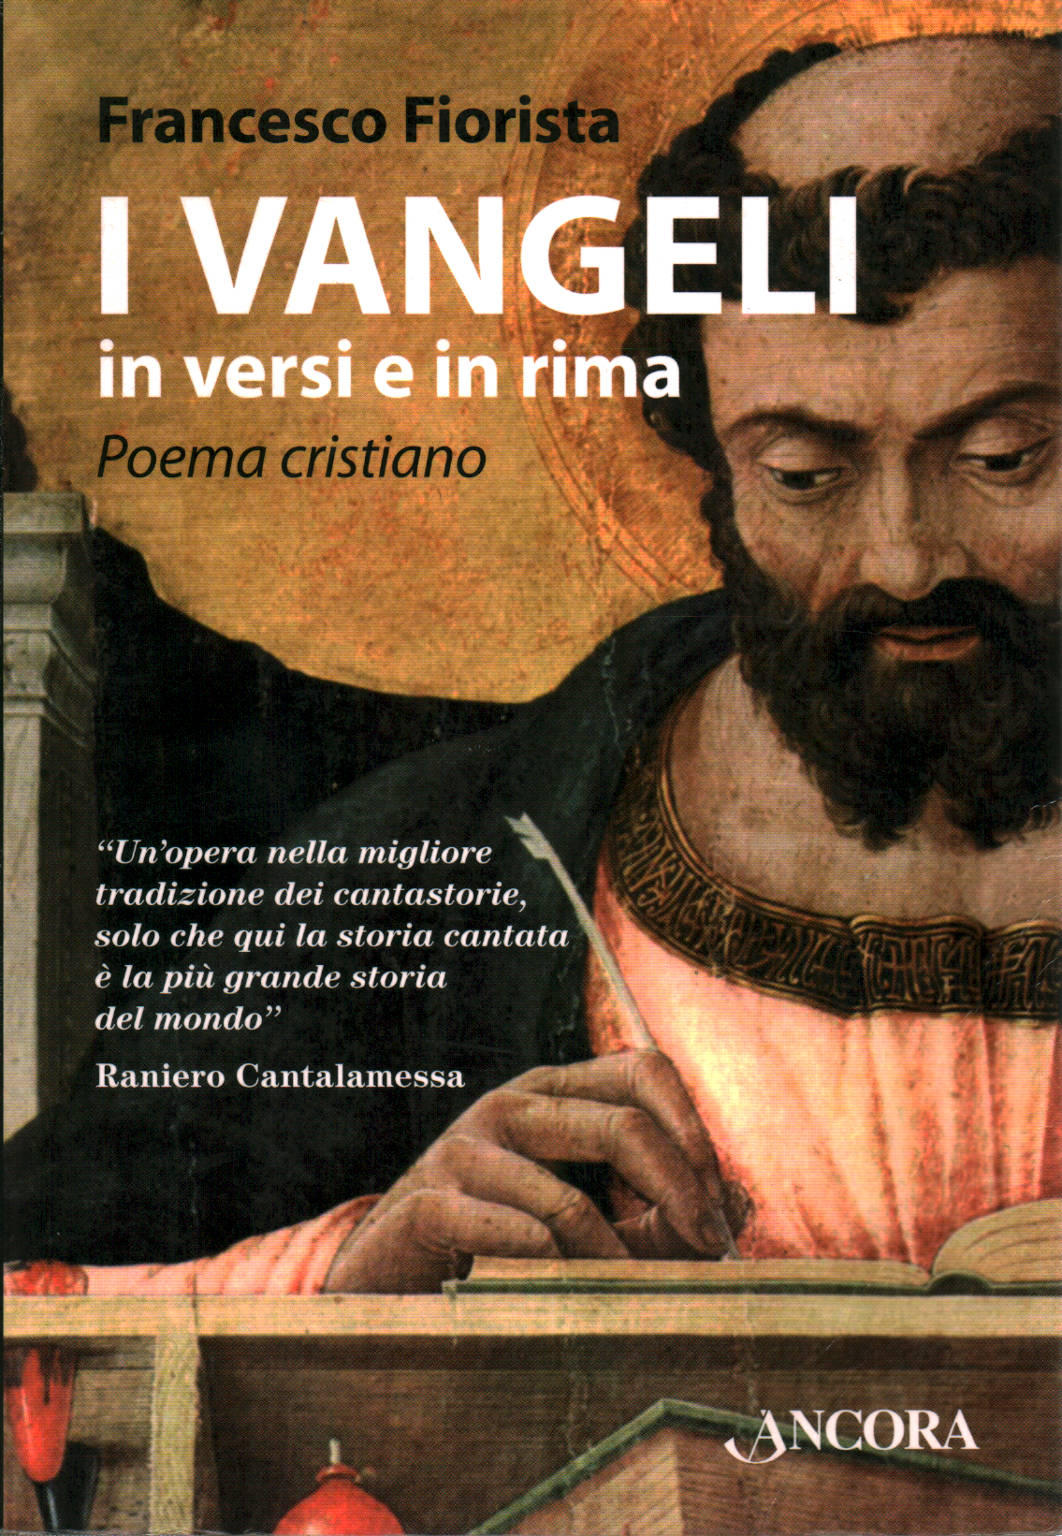 Los evangelios en verso y rima, Francesco Fiorista